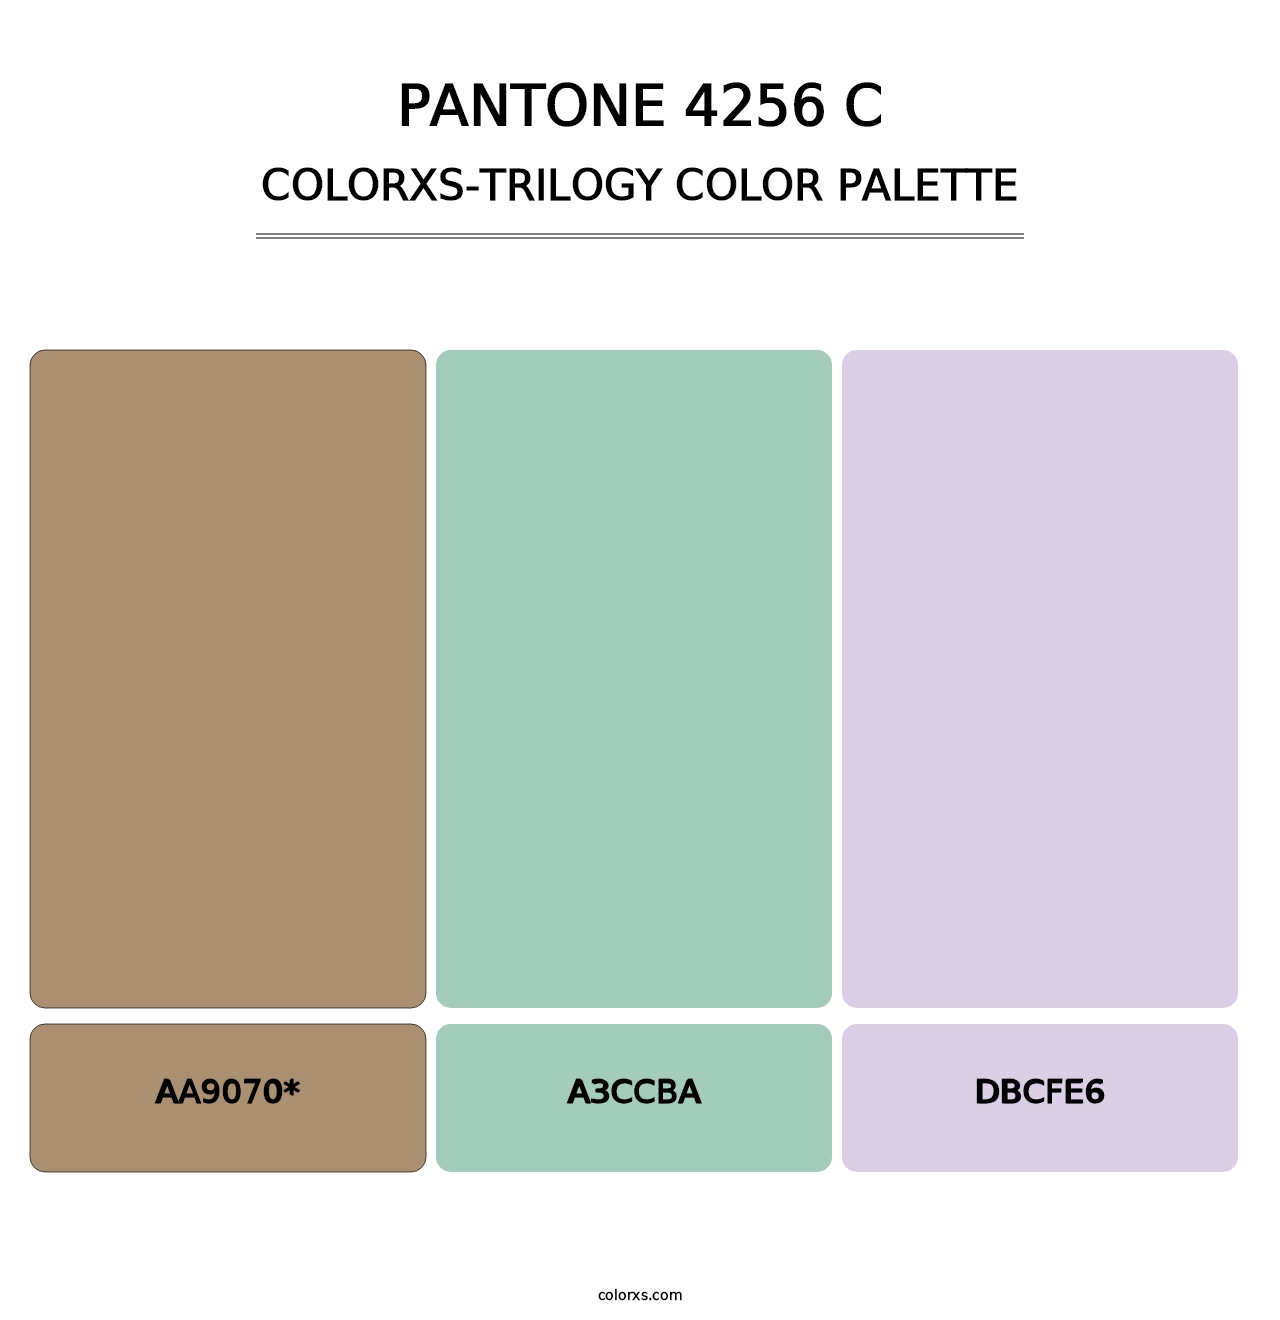 PANTONE 4256 C - Colorxs Trilogy Palette